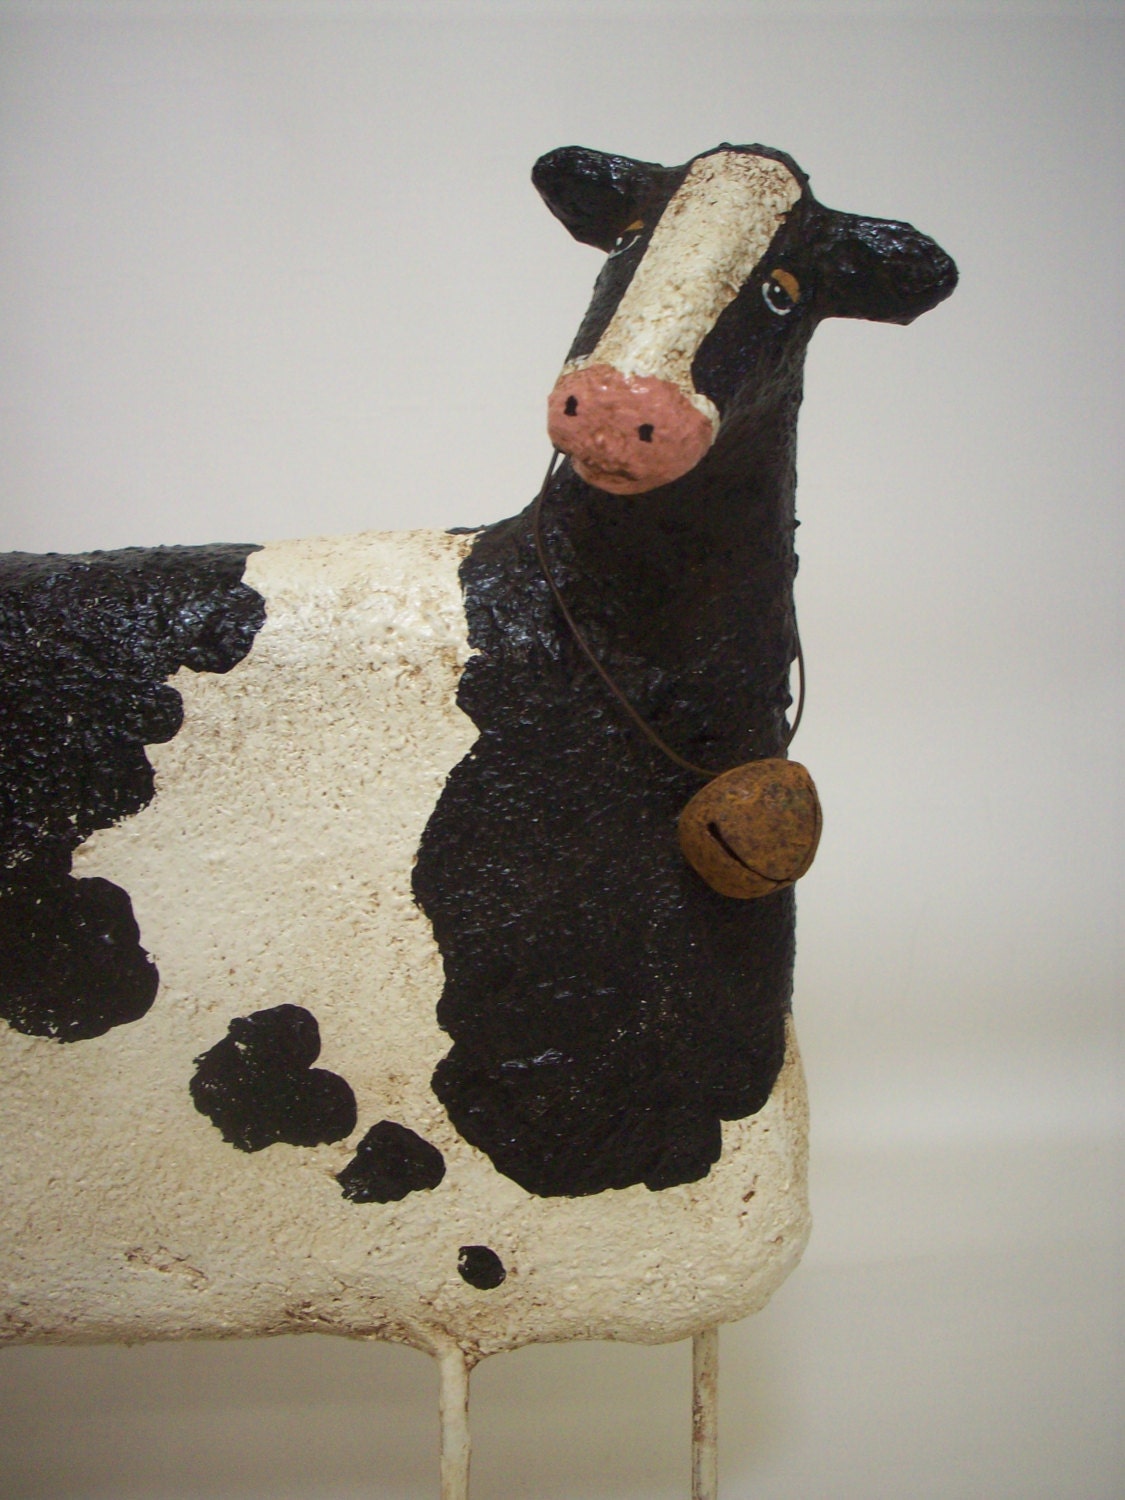 Primitive Paper Mache Folk Art Cow by papiermoonprimitives on Etsy